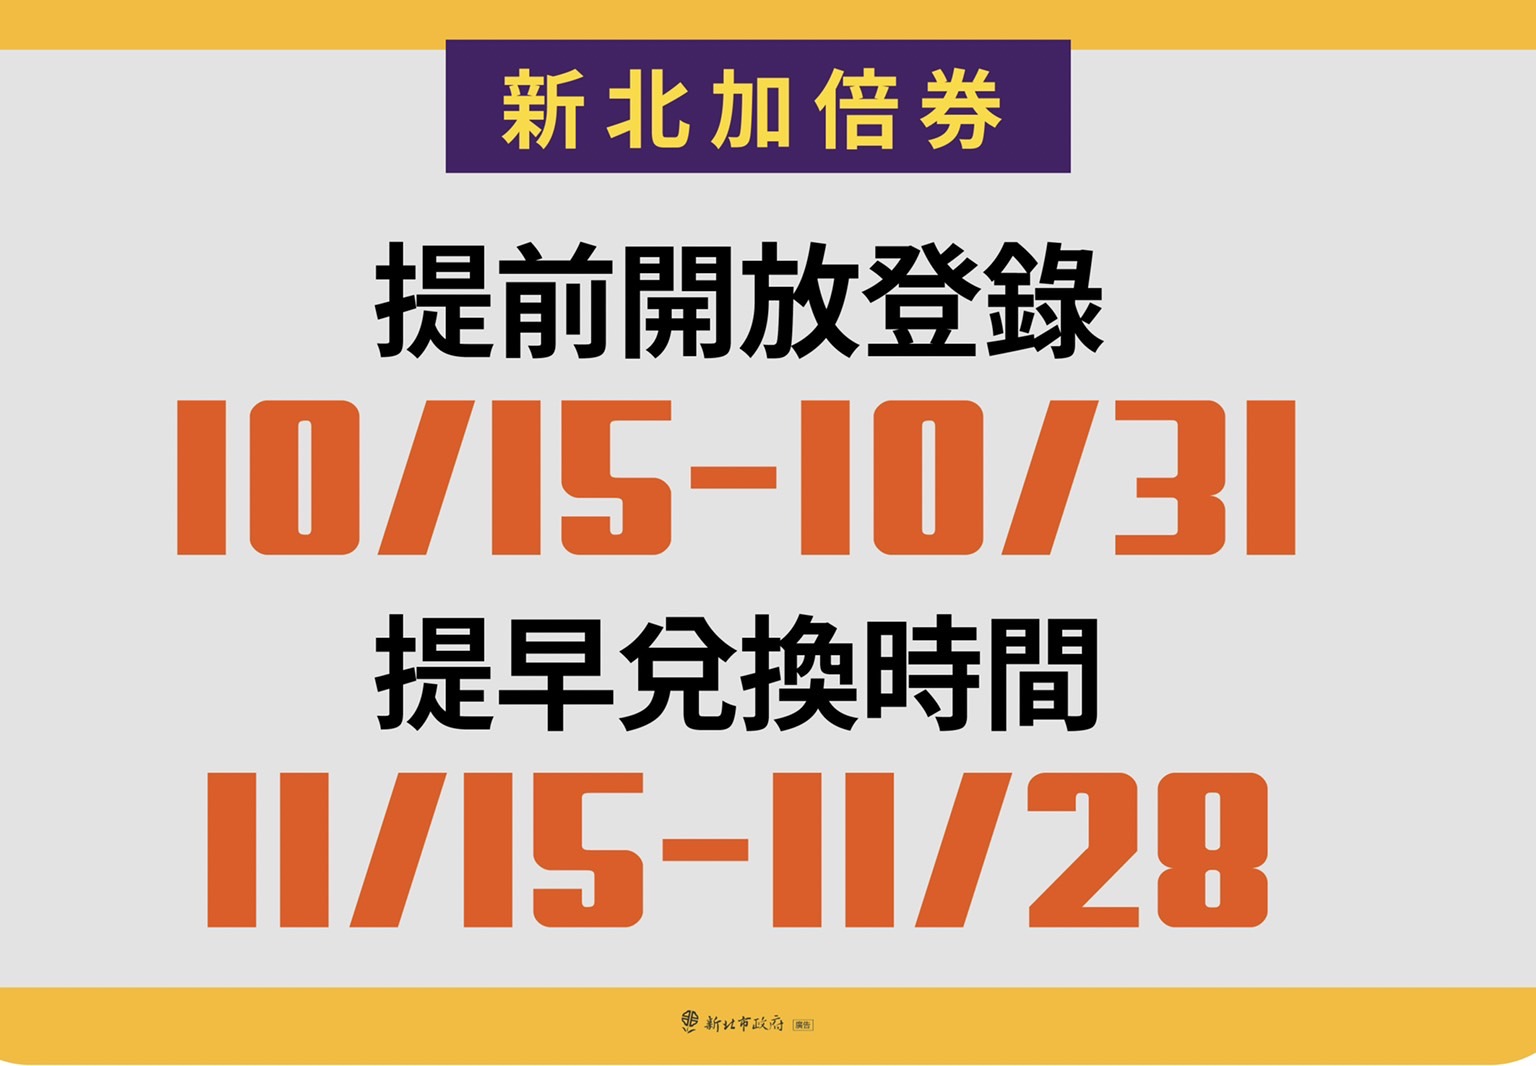 圖說：新北加倍券10月15日到10月31日開放登記抽獎。